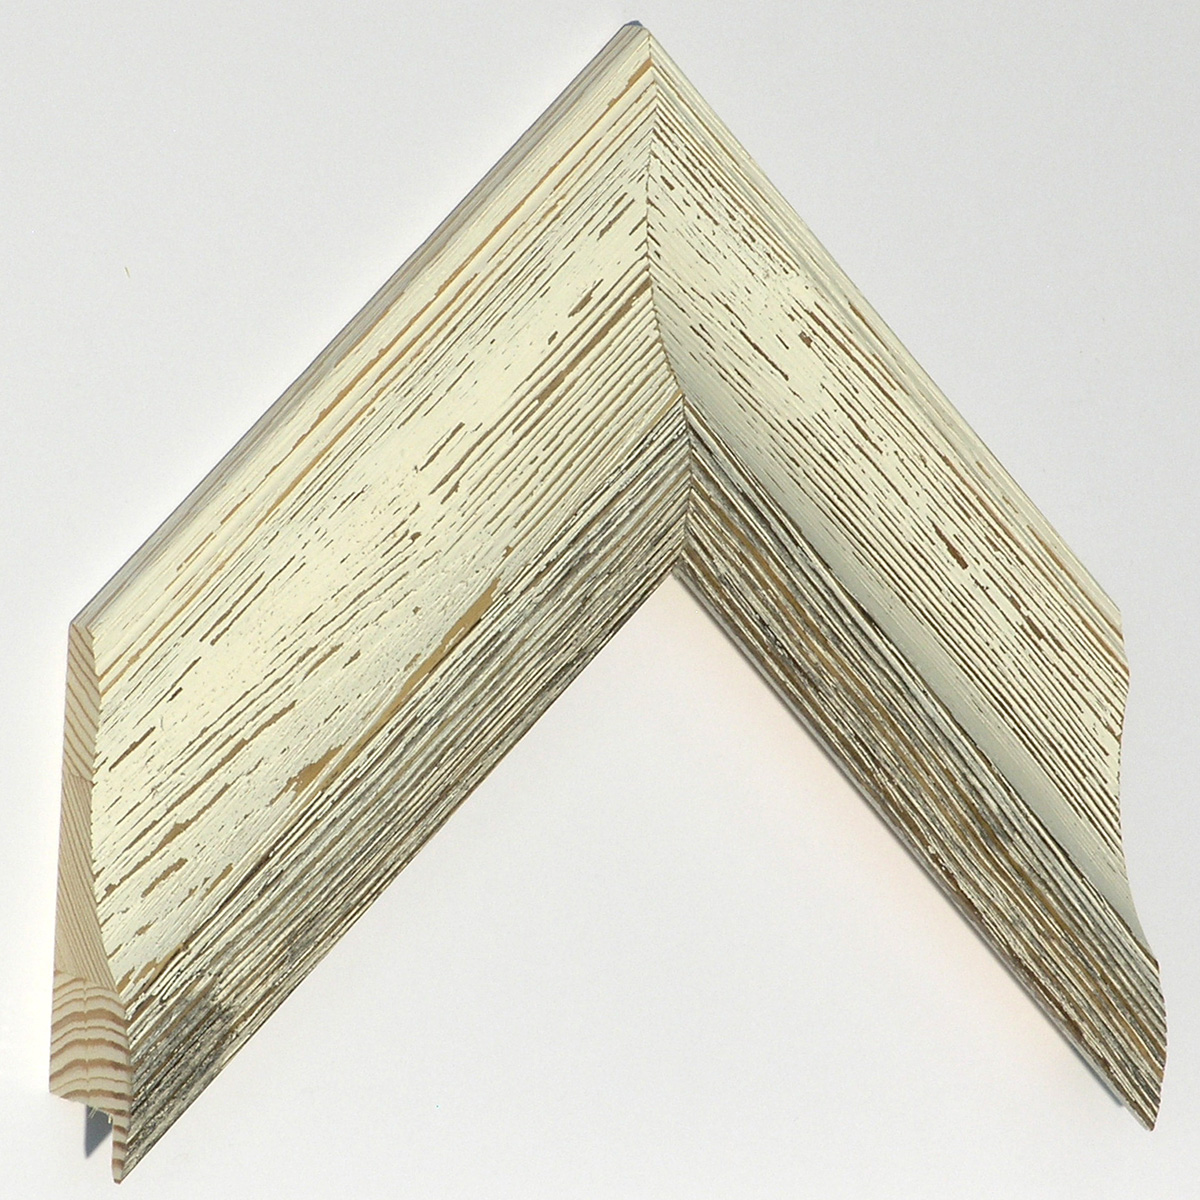 Moulding finger-jointed pine Width 67mm - White-gray, shabby - Sample